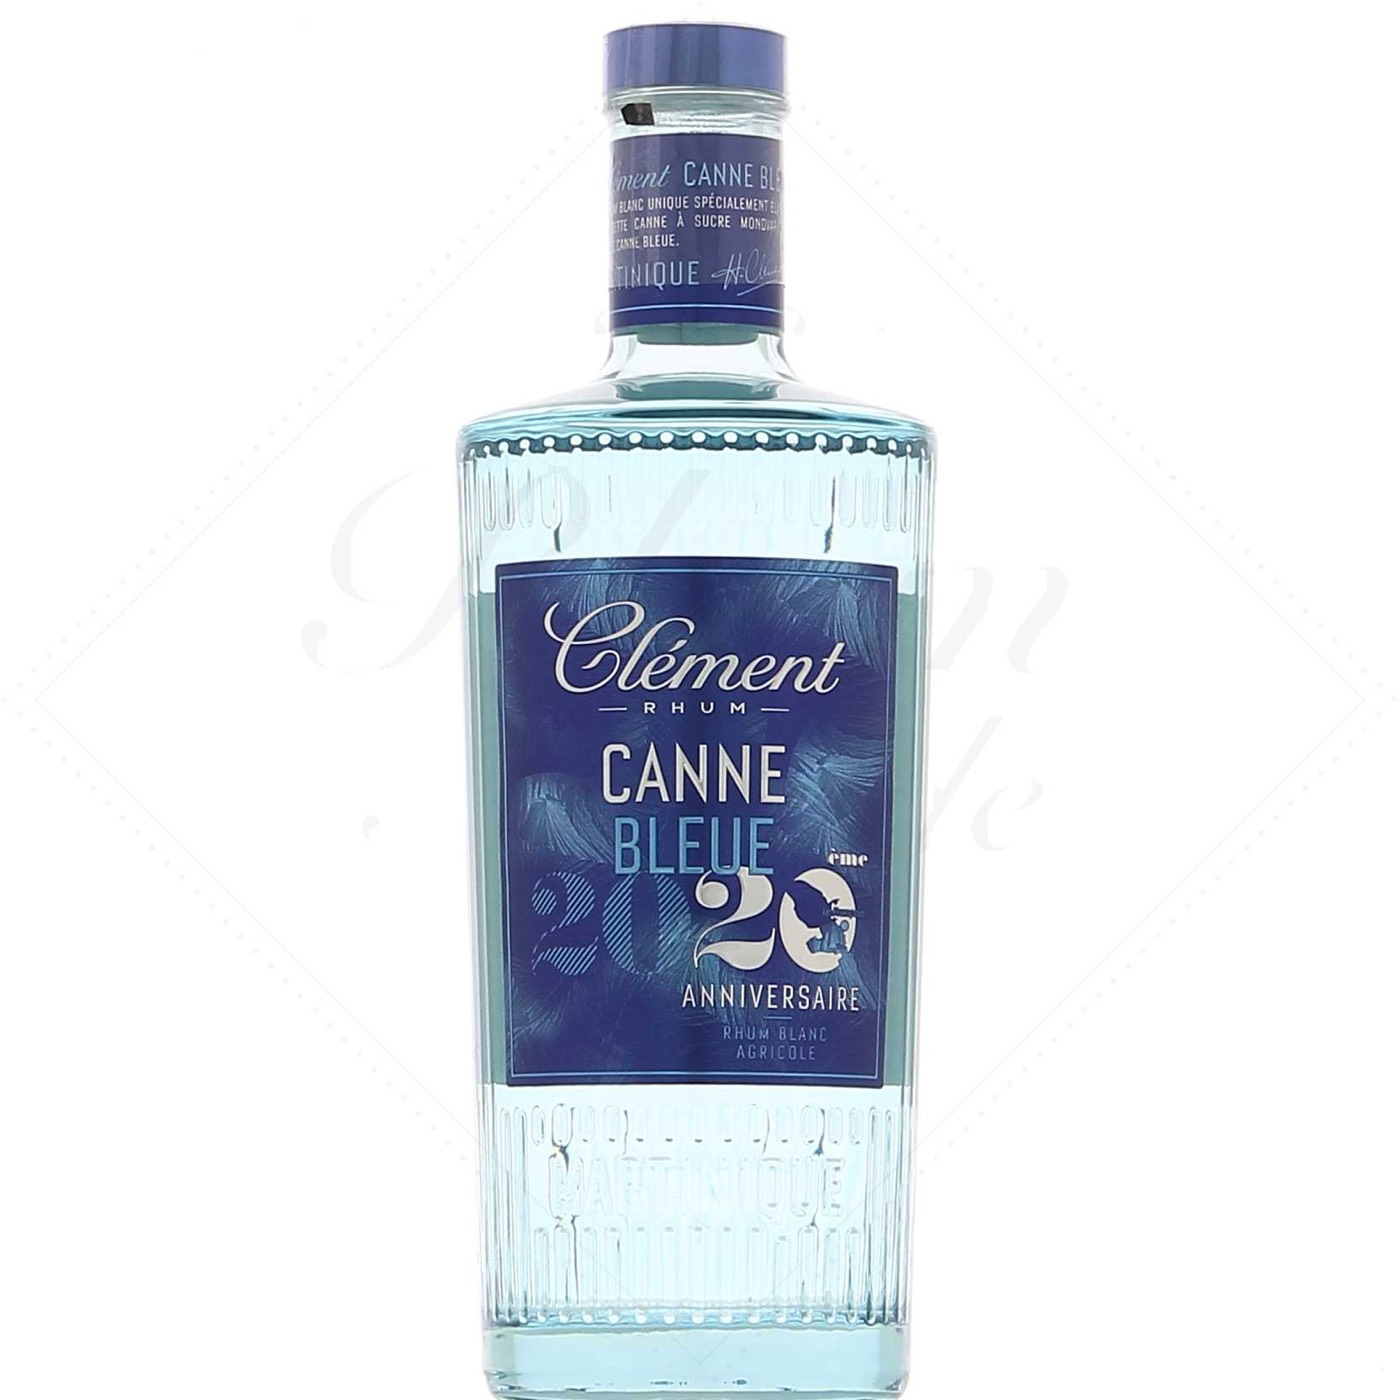 Bottle image of Clément Canne Bleue